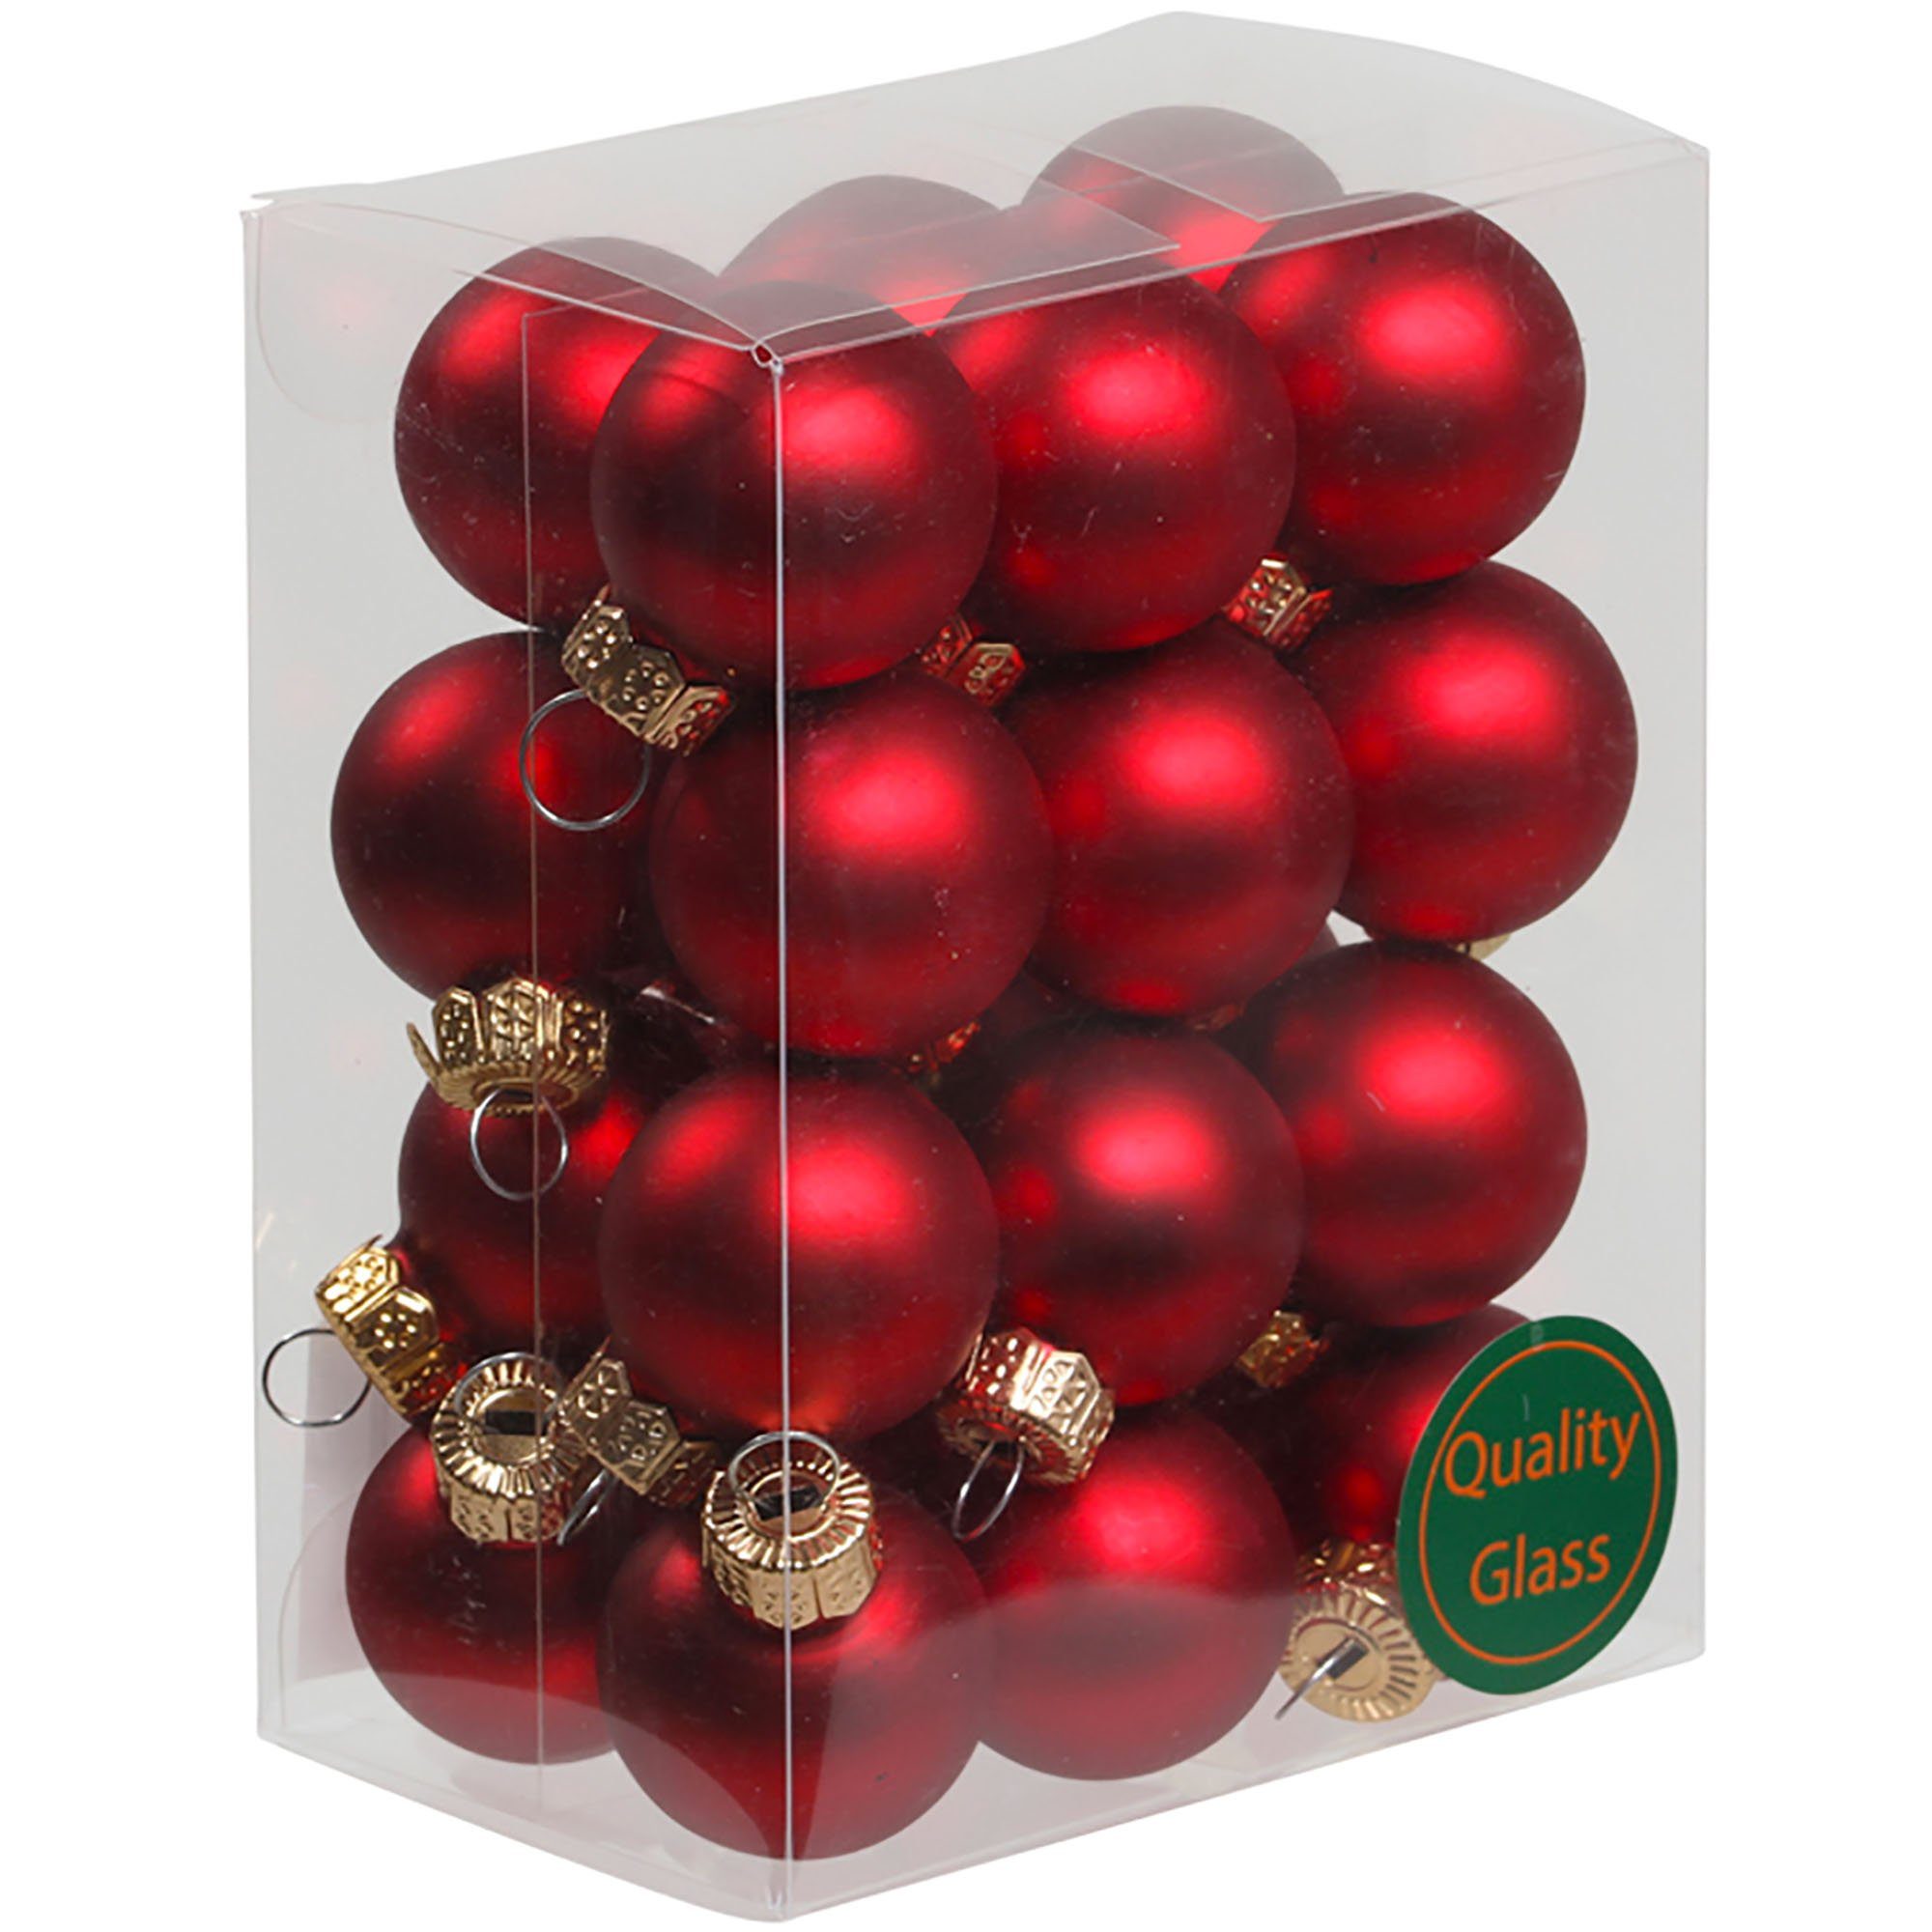 Annastore Weihnachtsbaumkugel Kleine Baumkugeln aus Glas Ø 2 cm/3 cm - Christbaumkugeln, Baumschmuck, Christbaumschmuck Rot matt - 24 Stück